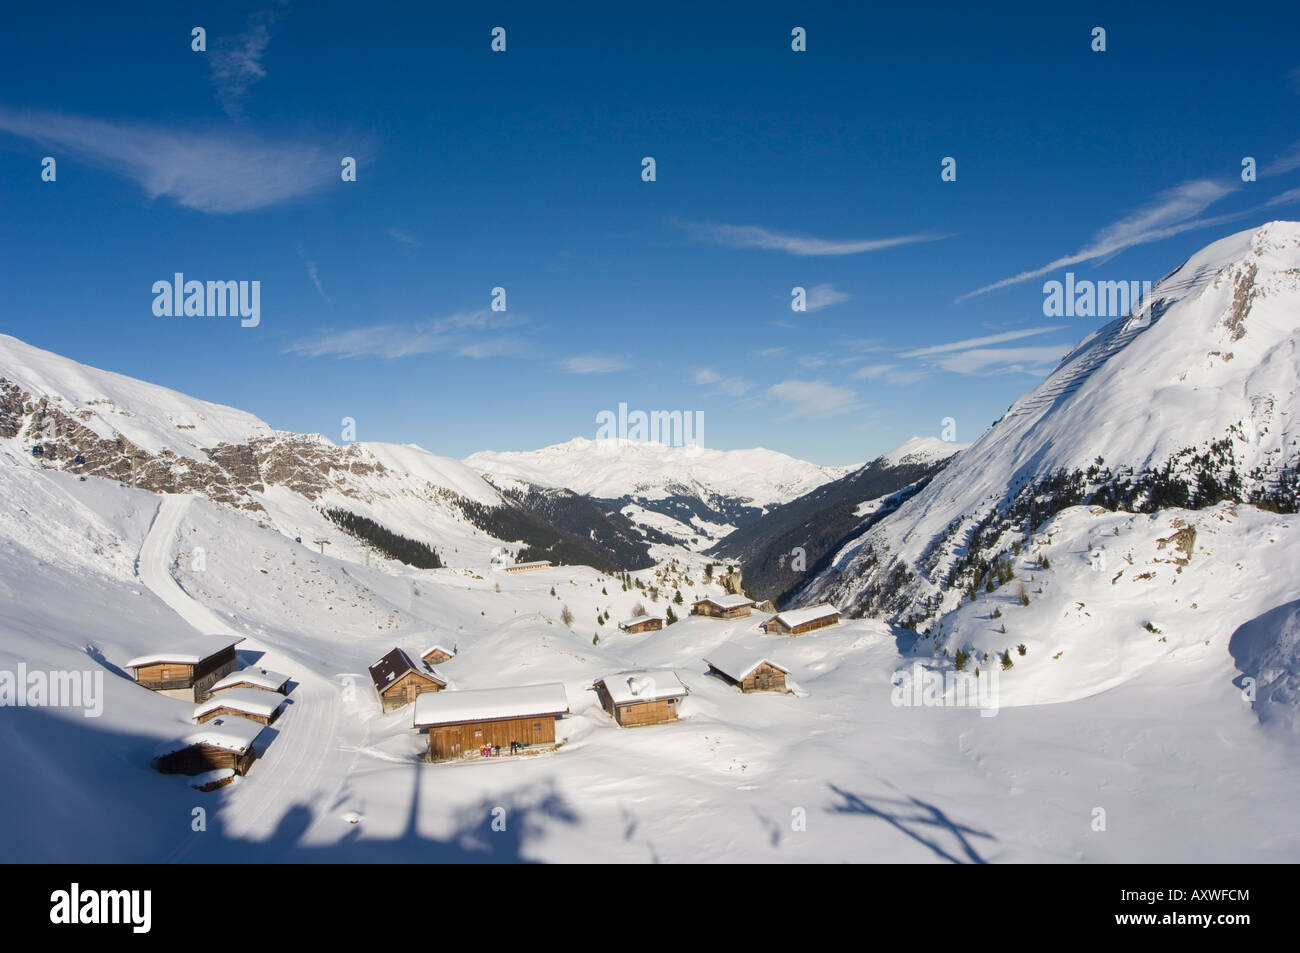 Les huttes, glacier de Hintertux, Mayrhofen ski resort, vallée du Zillertal, Tyrol en Autriche, Autriche Banque D'Images